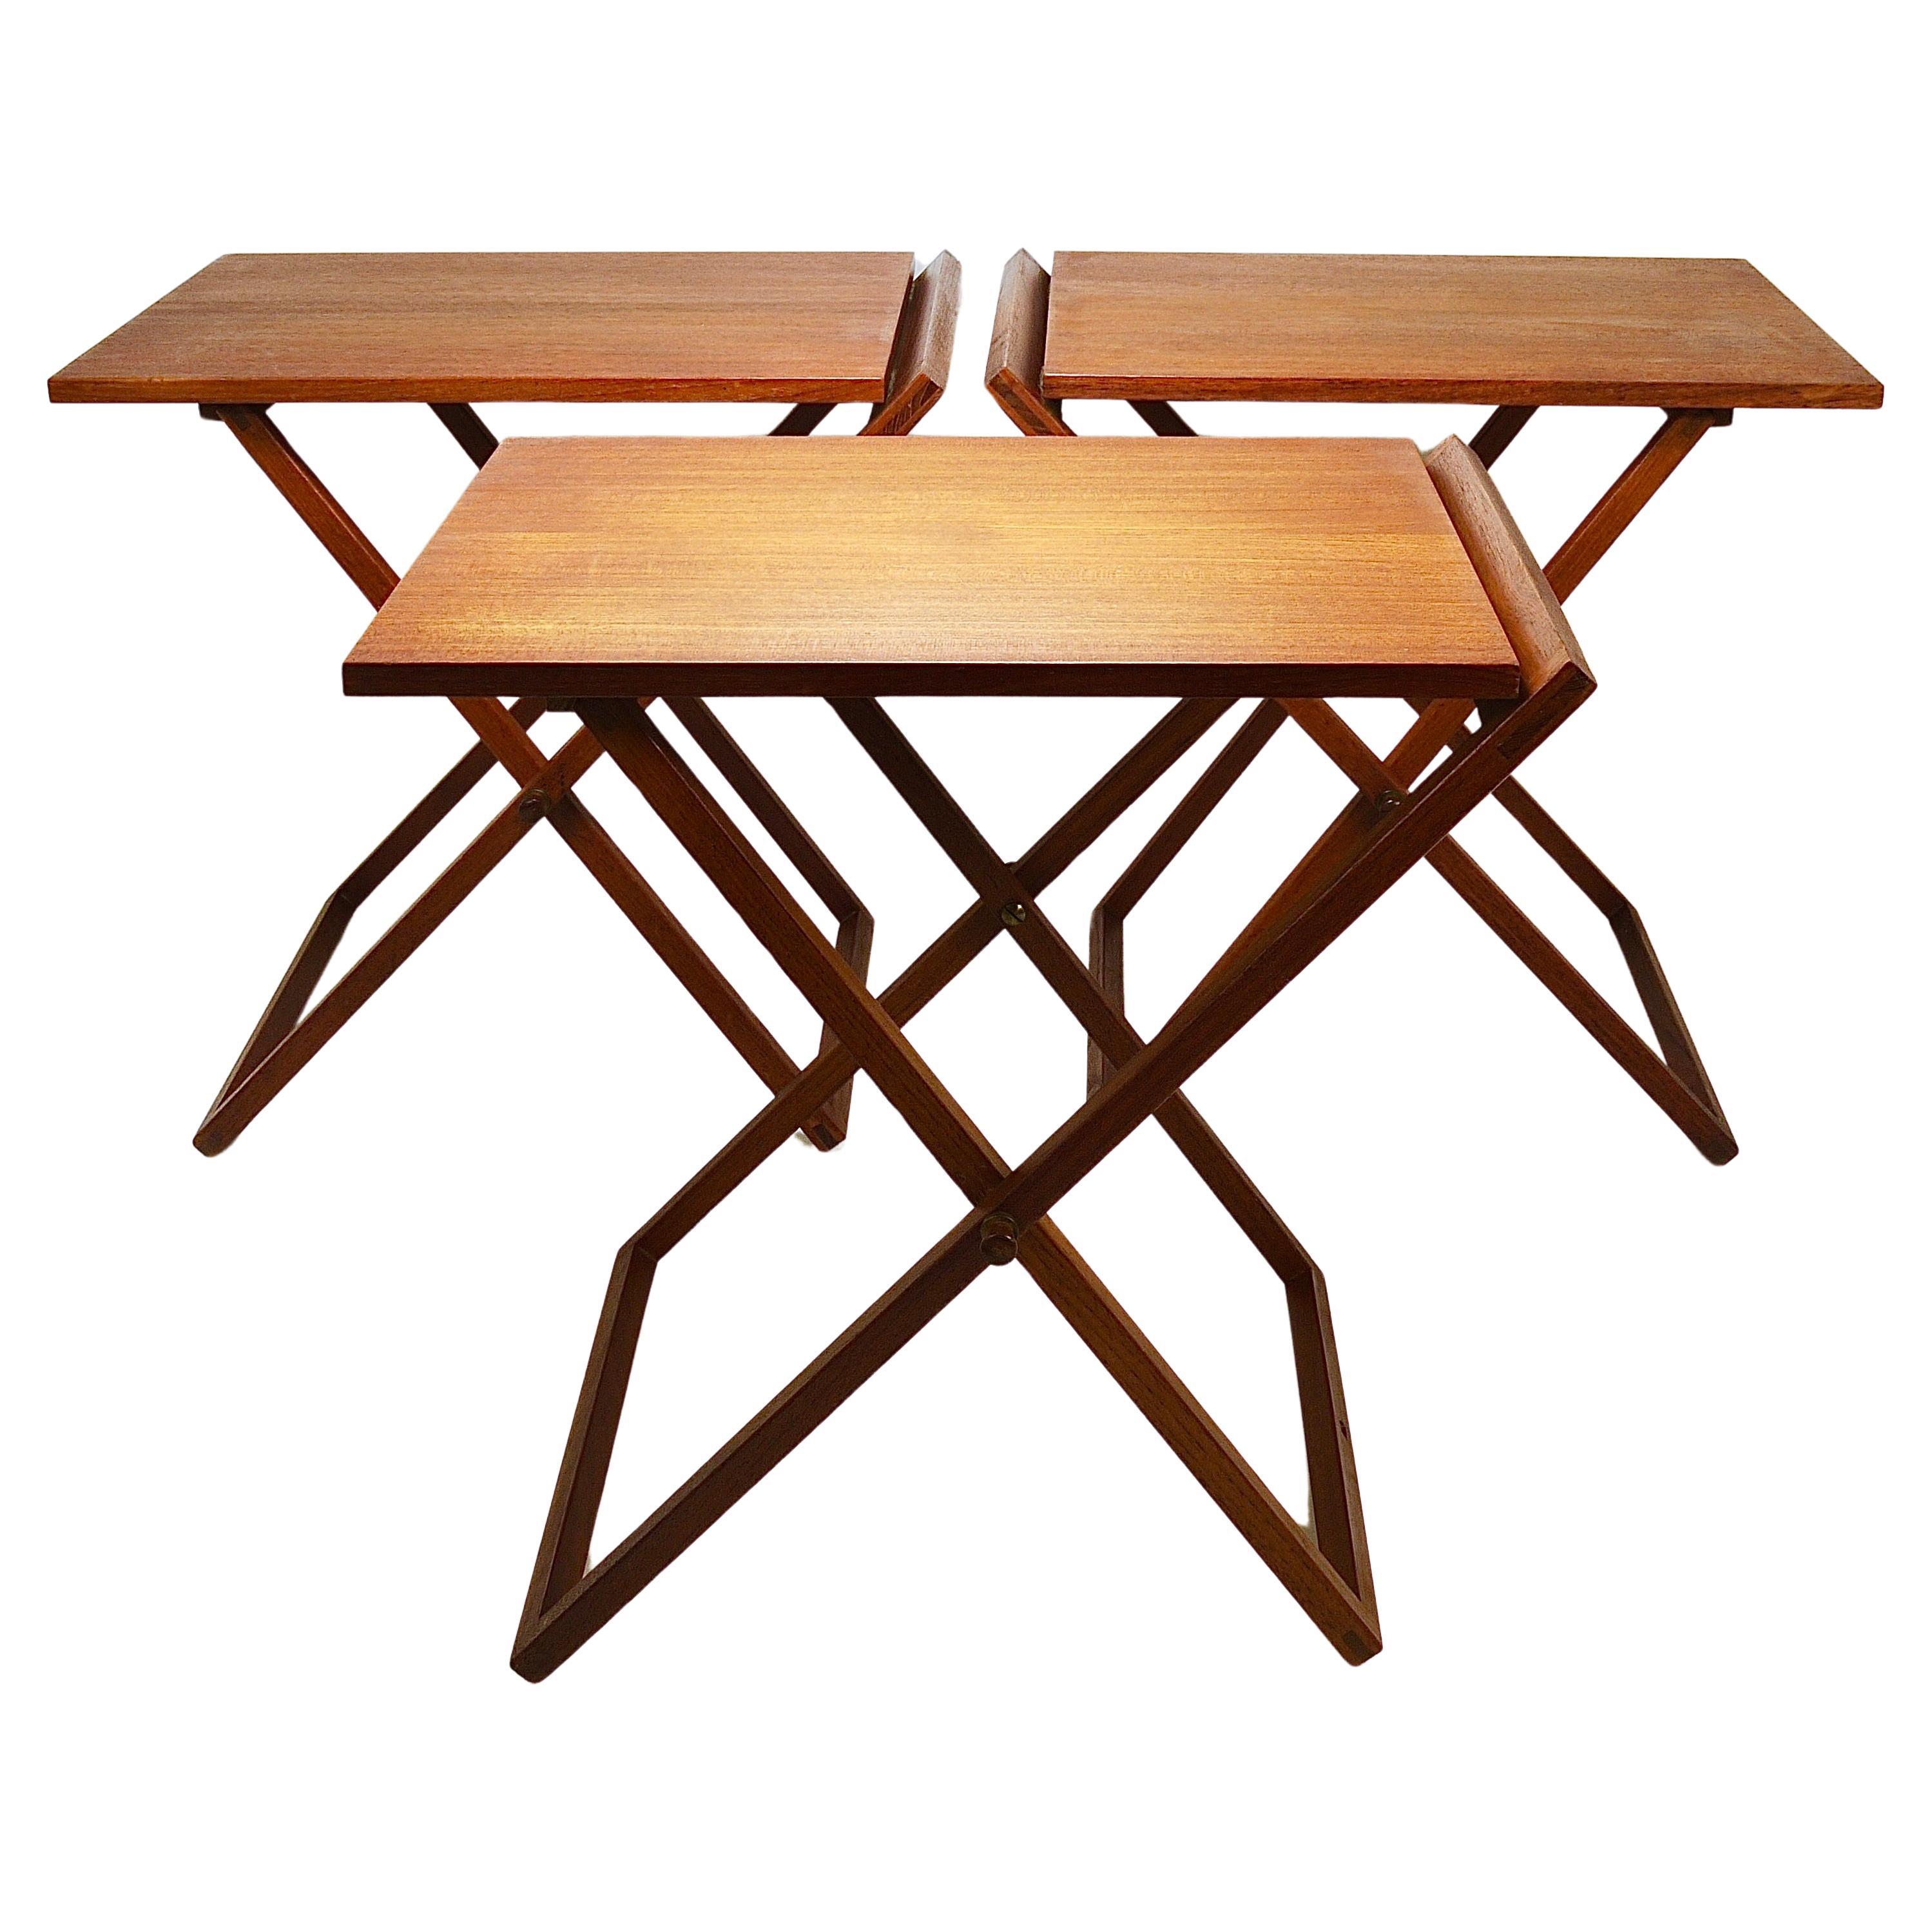 Three Illum Wikkelso Danish Modern Teak Folding Tables, Silkeborg Denmark, 1960s For Sale